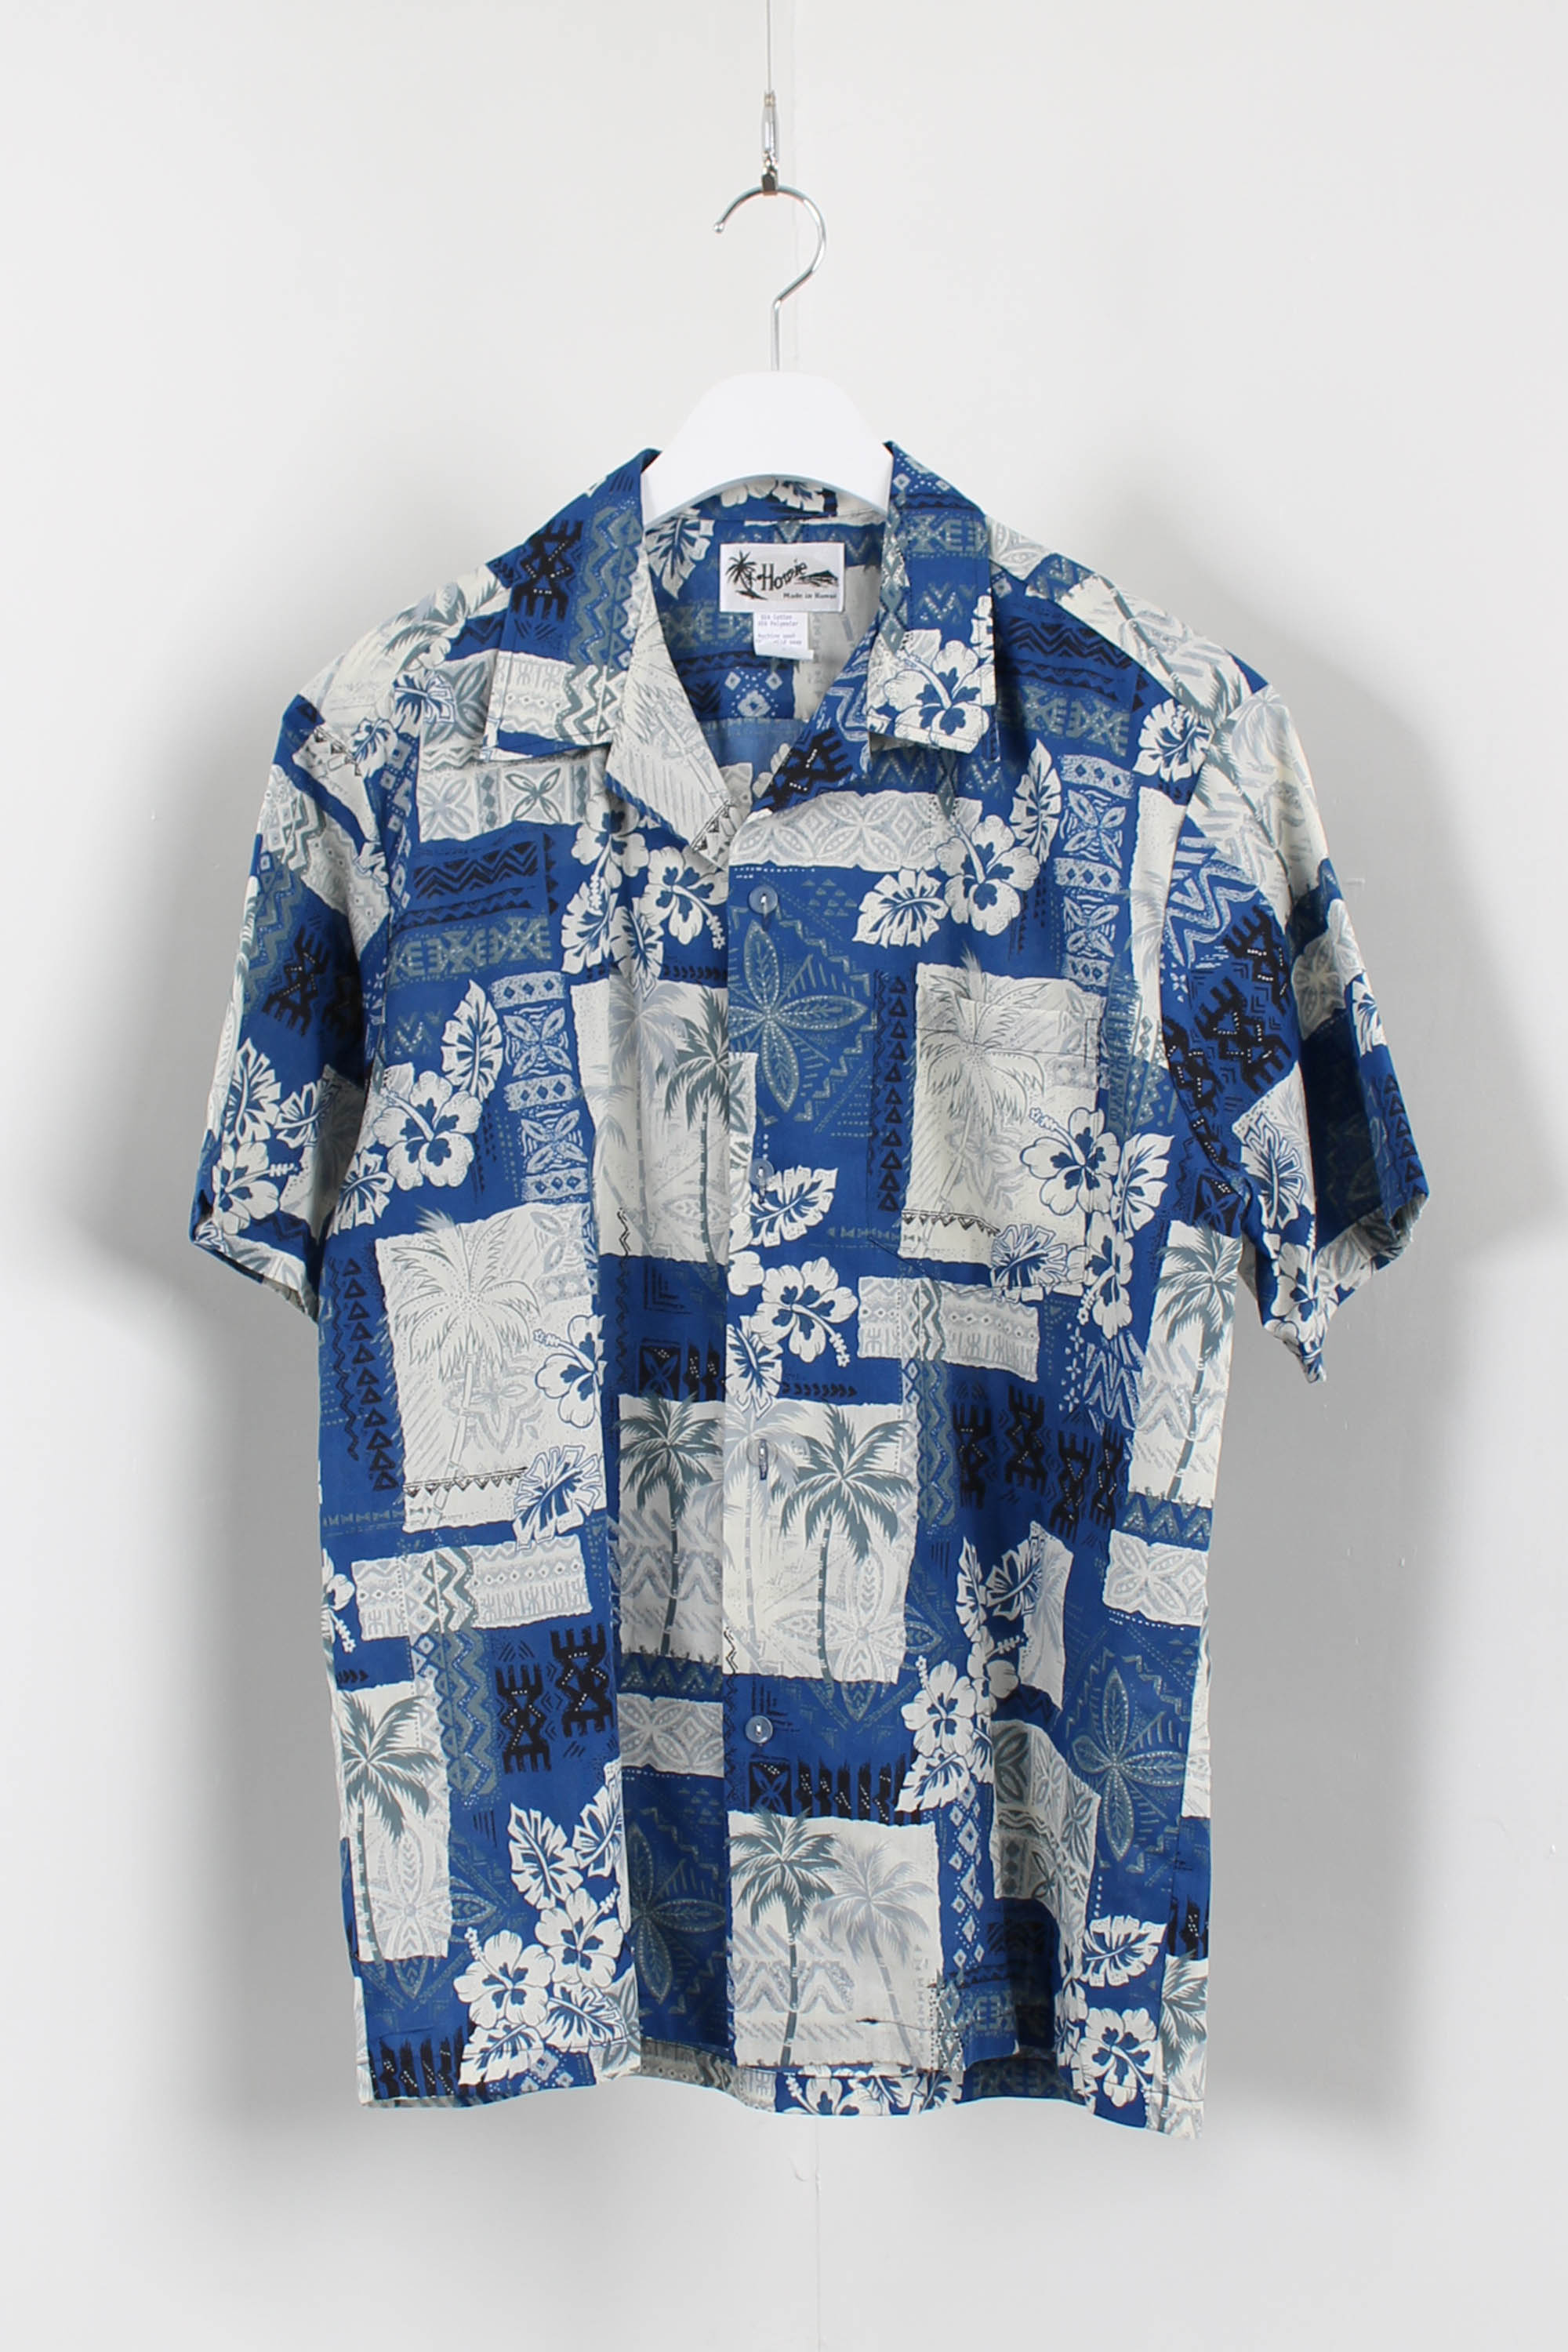 Howie aloha shirt